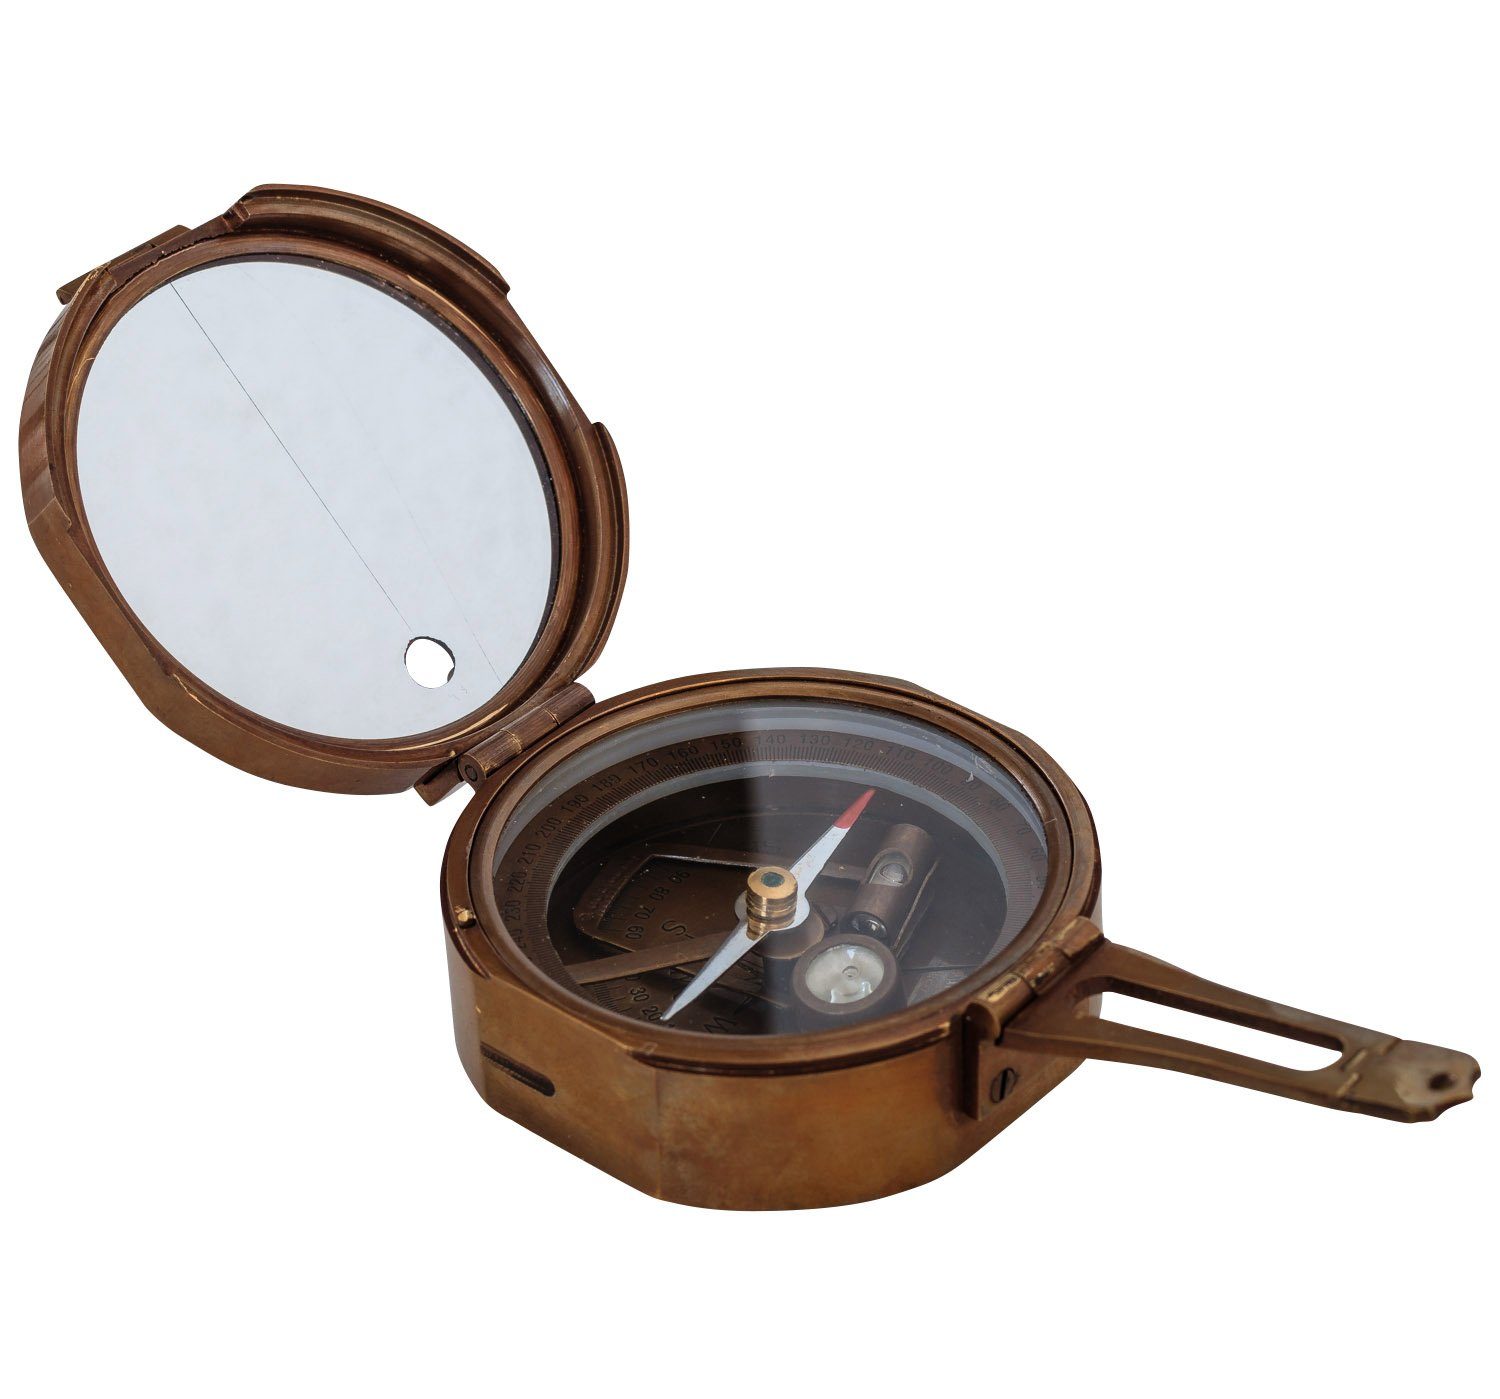 Aubaho Kompass Kompass Peilkompass Maritim Replik Navigation Messing Antik-Stil Glas